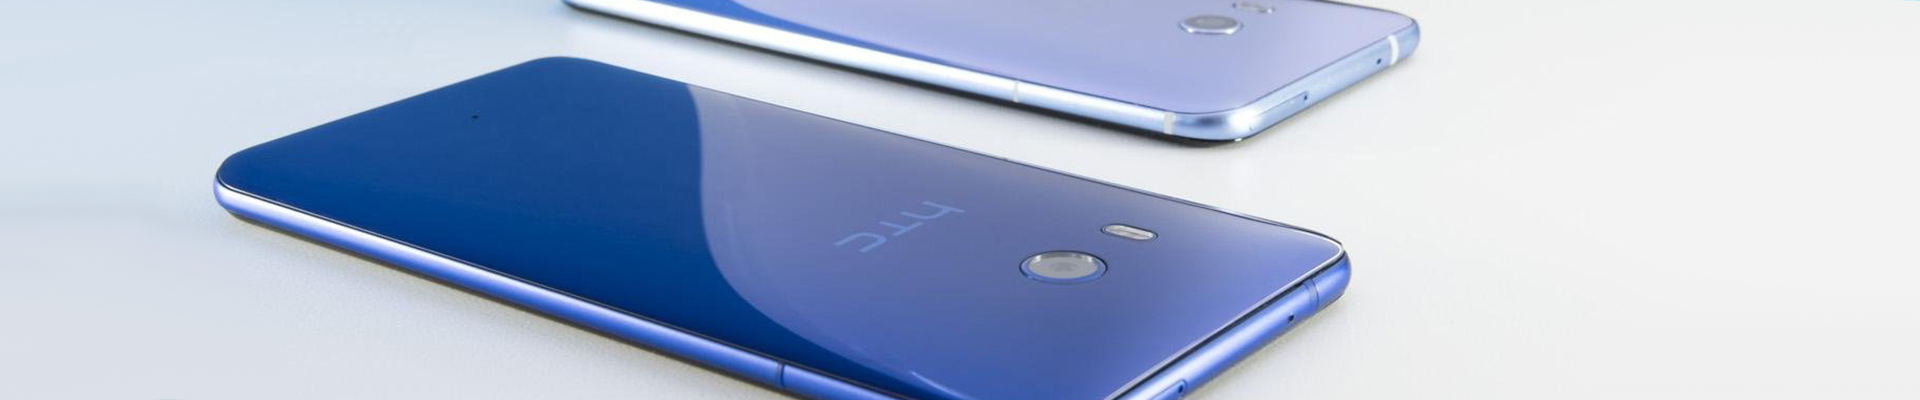 Снижение цены на HTC U11+ и HTC U11